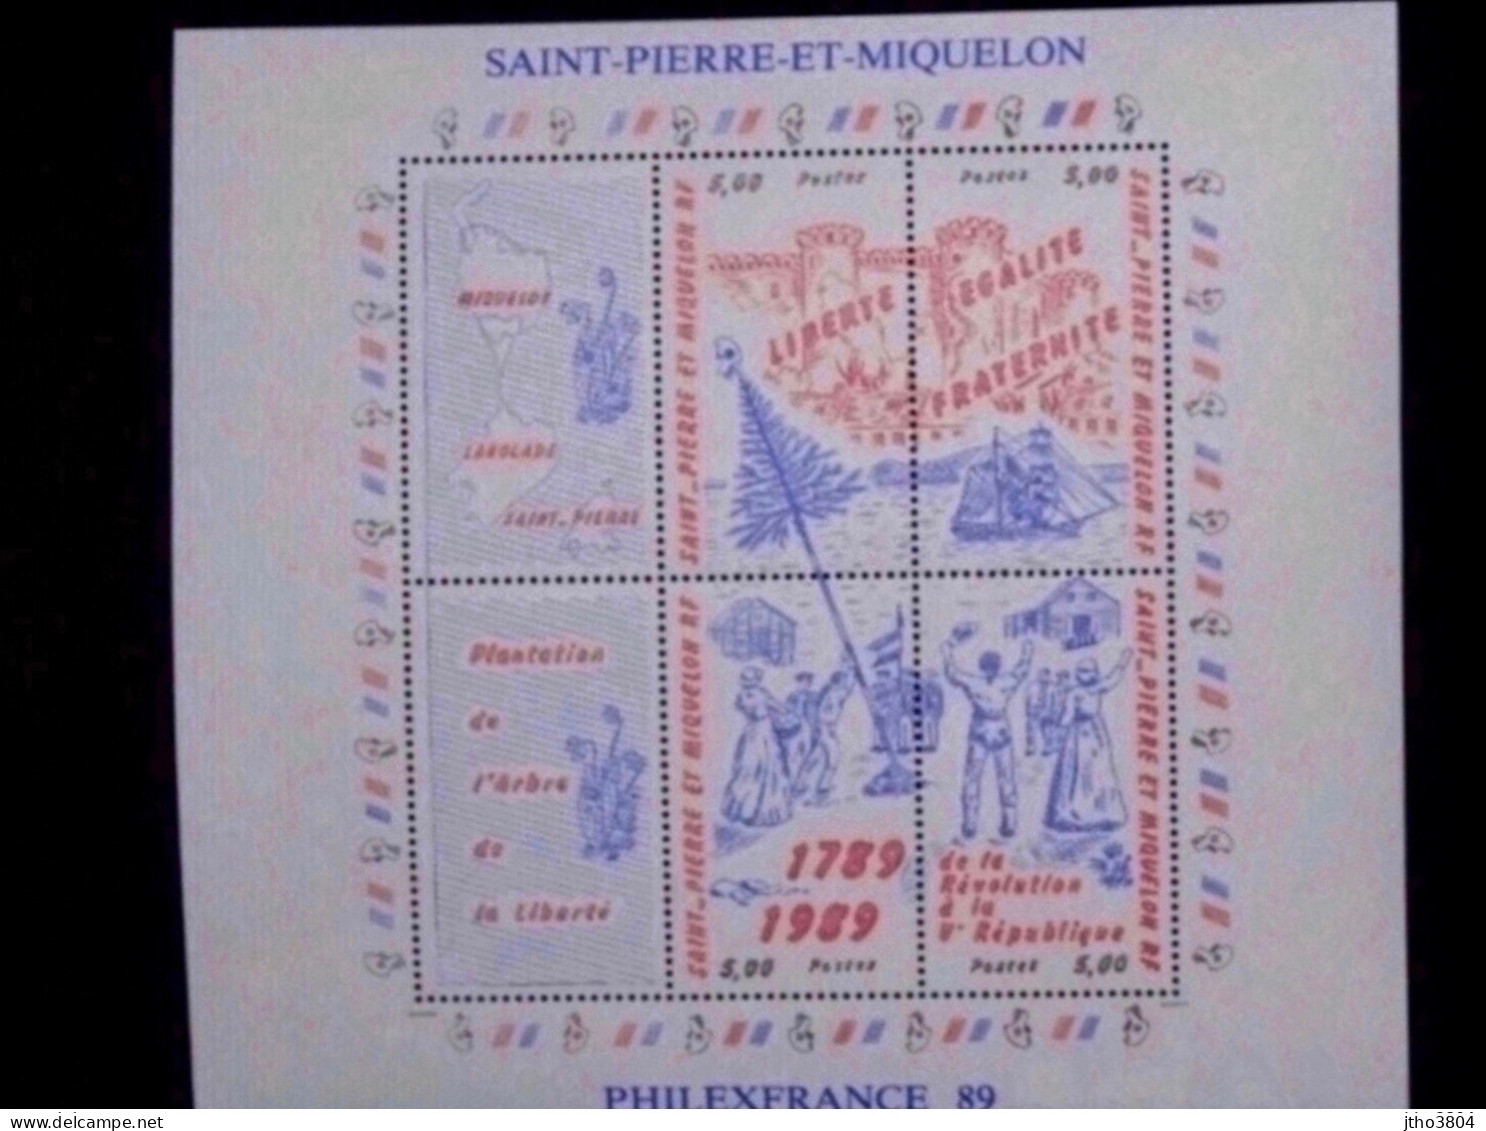 Saint Pierre Et Miquelon -Philexfrance 89 - Bloc 3 Révolution Française - BF3 - Ungebraucht